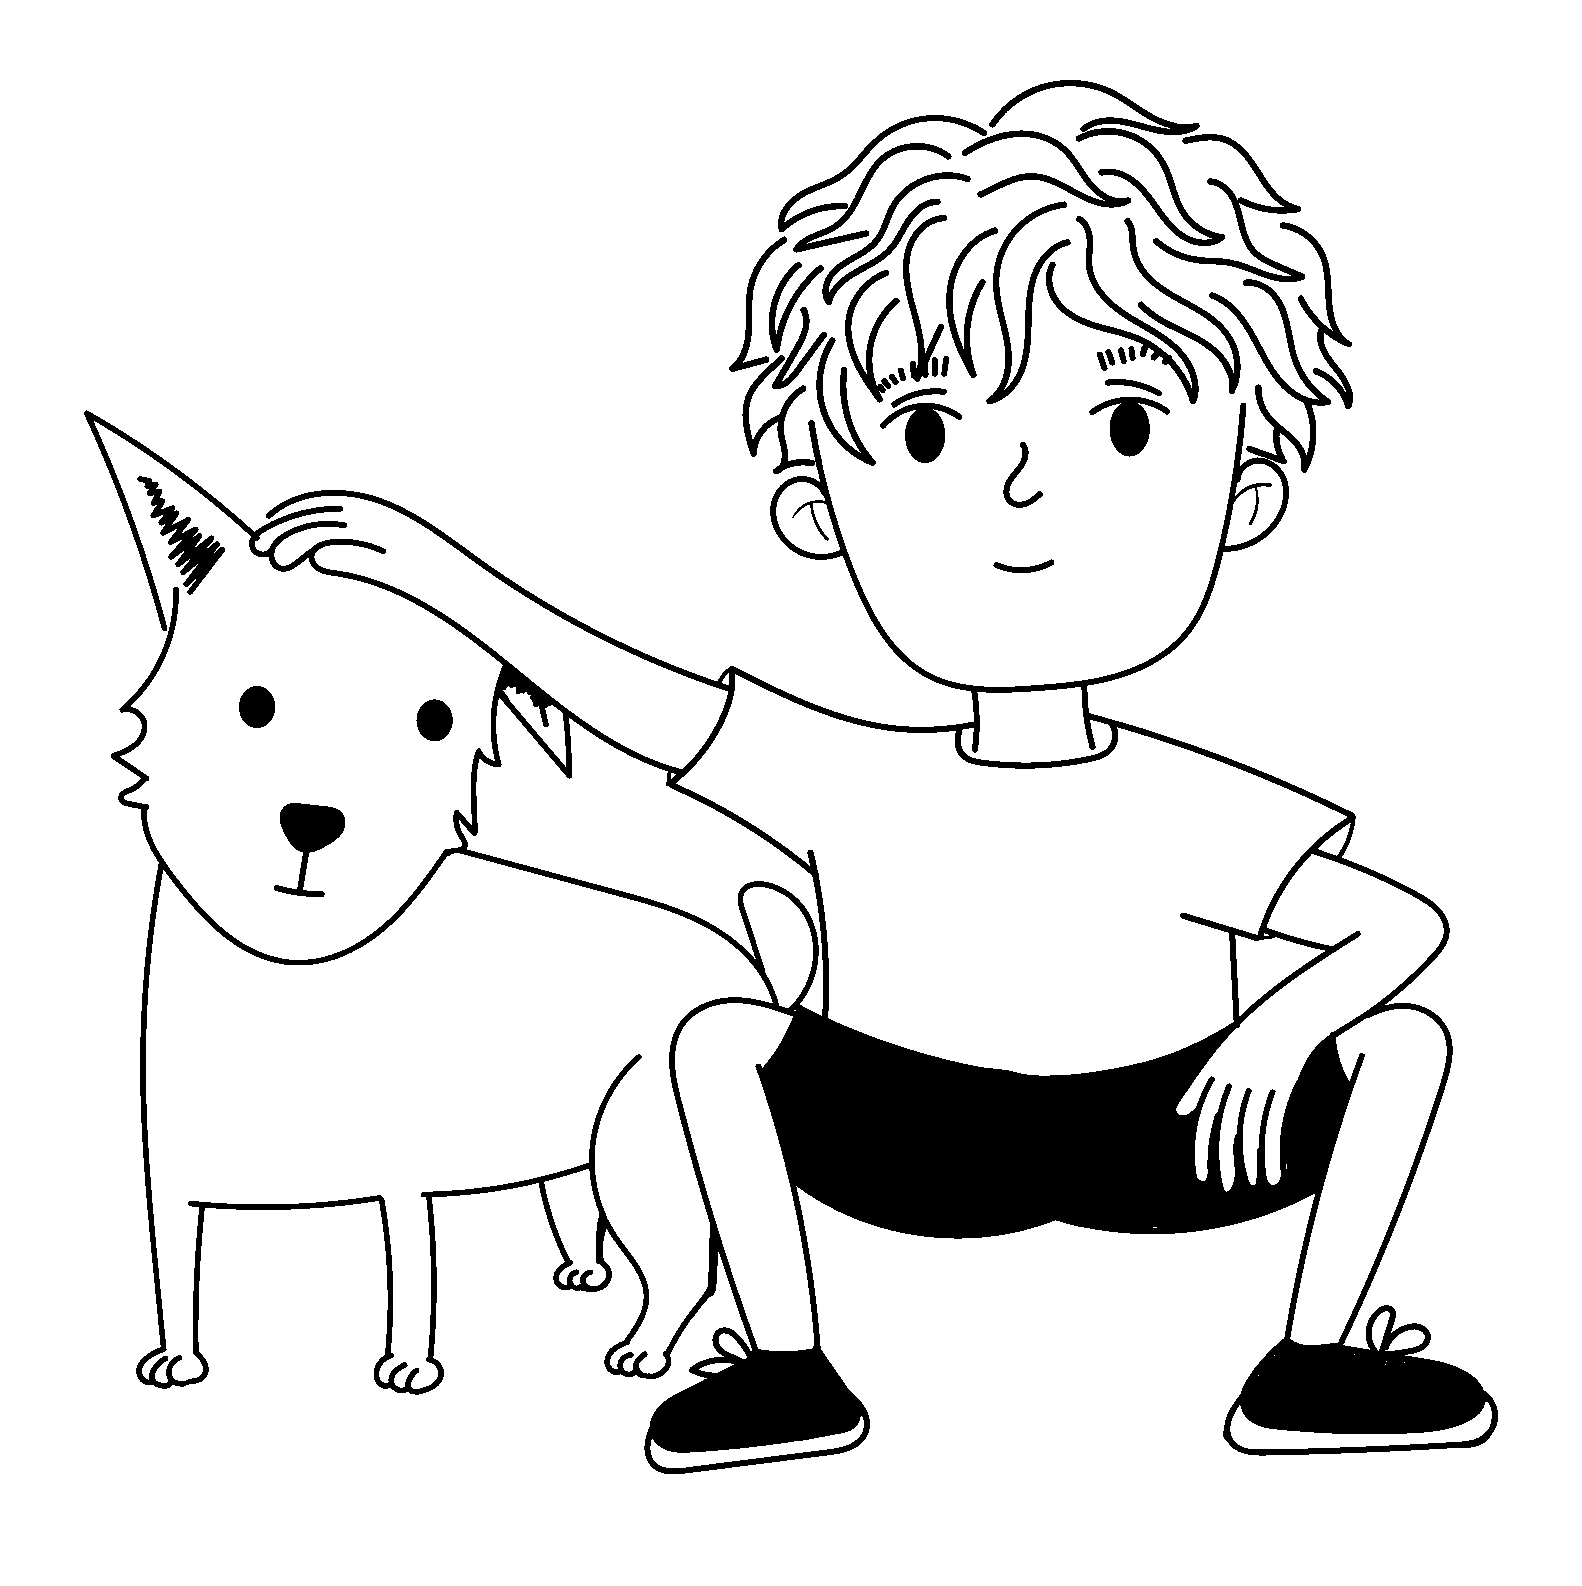 صفحة التلوين لطفل يمسّط كلبه بأسلوب رسوم متحركة